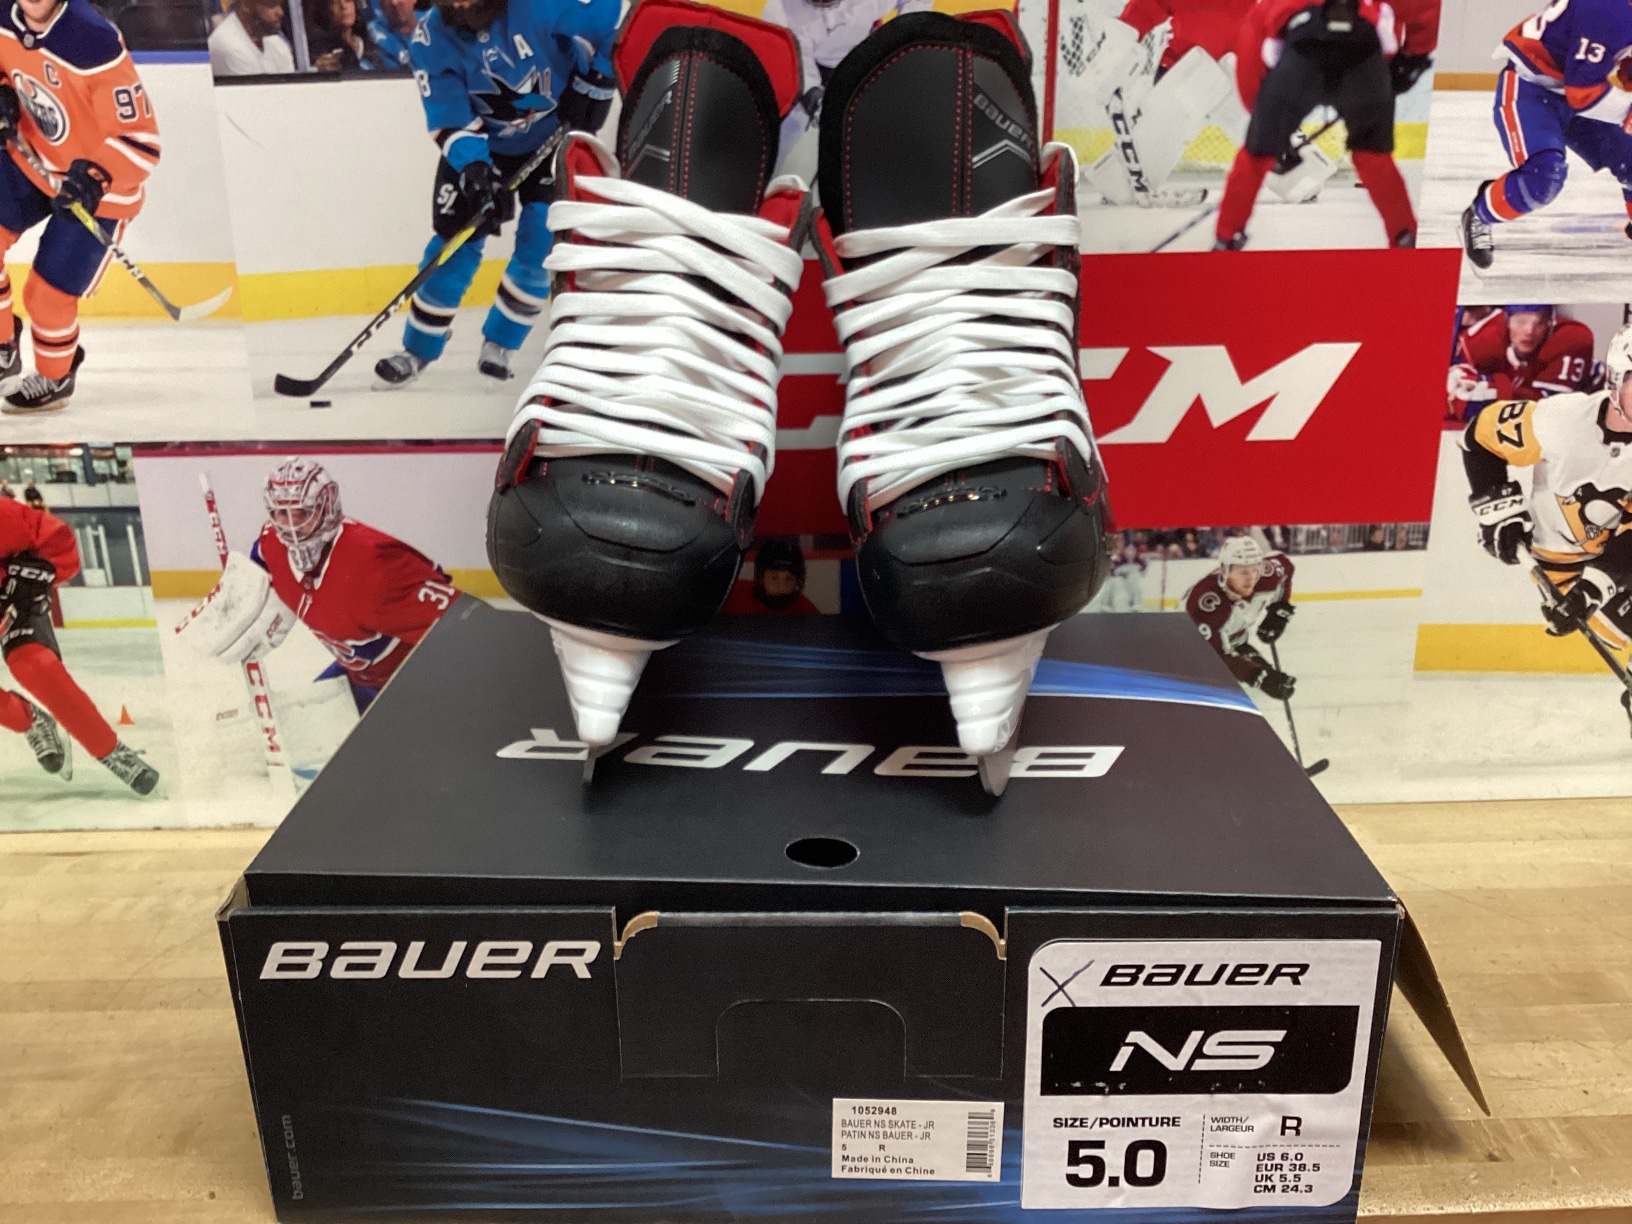 New Junior Bauer Ns Hockey Skates Regular Width Size 5 (Great Rec Skate)